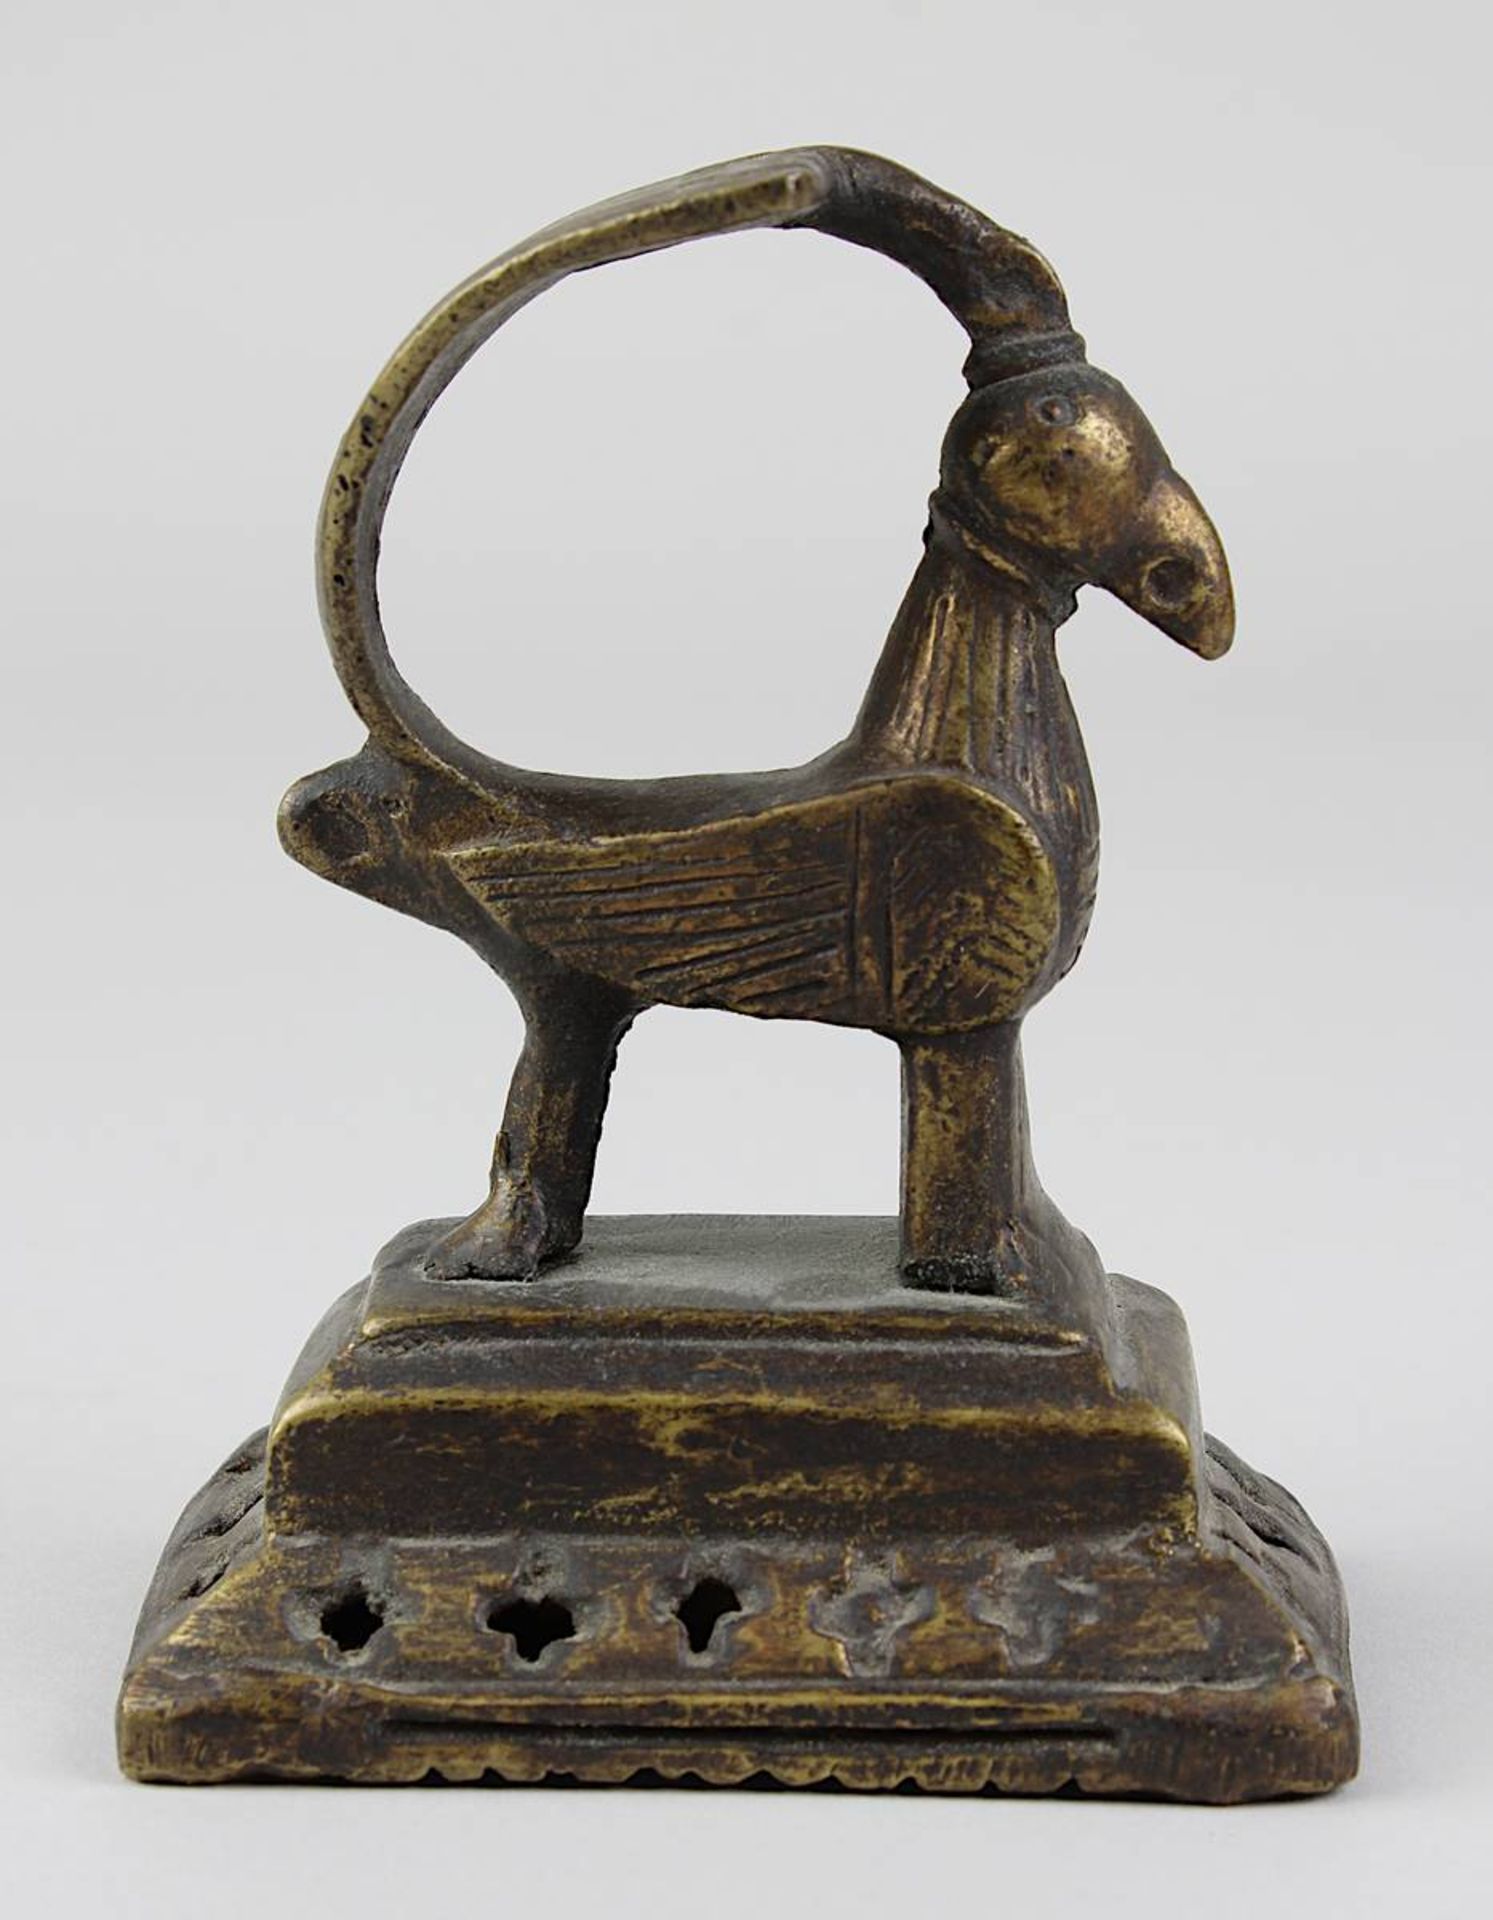 Rassel in Form eines stilisierten Vogels, Bronzeguss, Indien, H 9 cm, B 5 cm. 2756-025 - Image 2 of 3